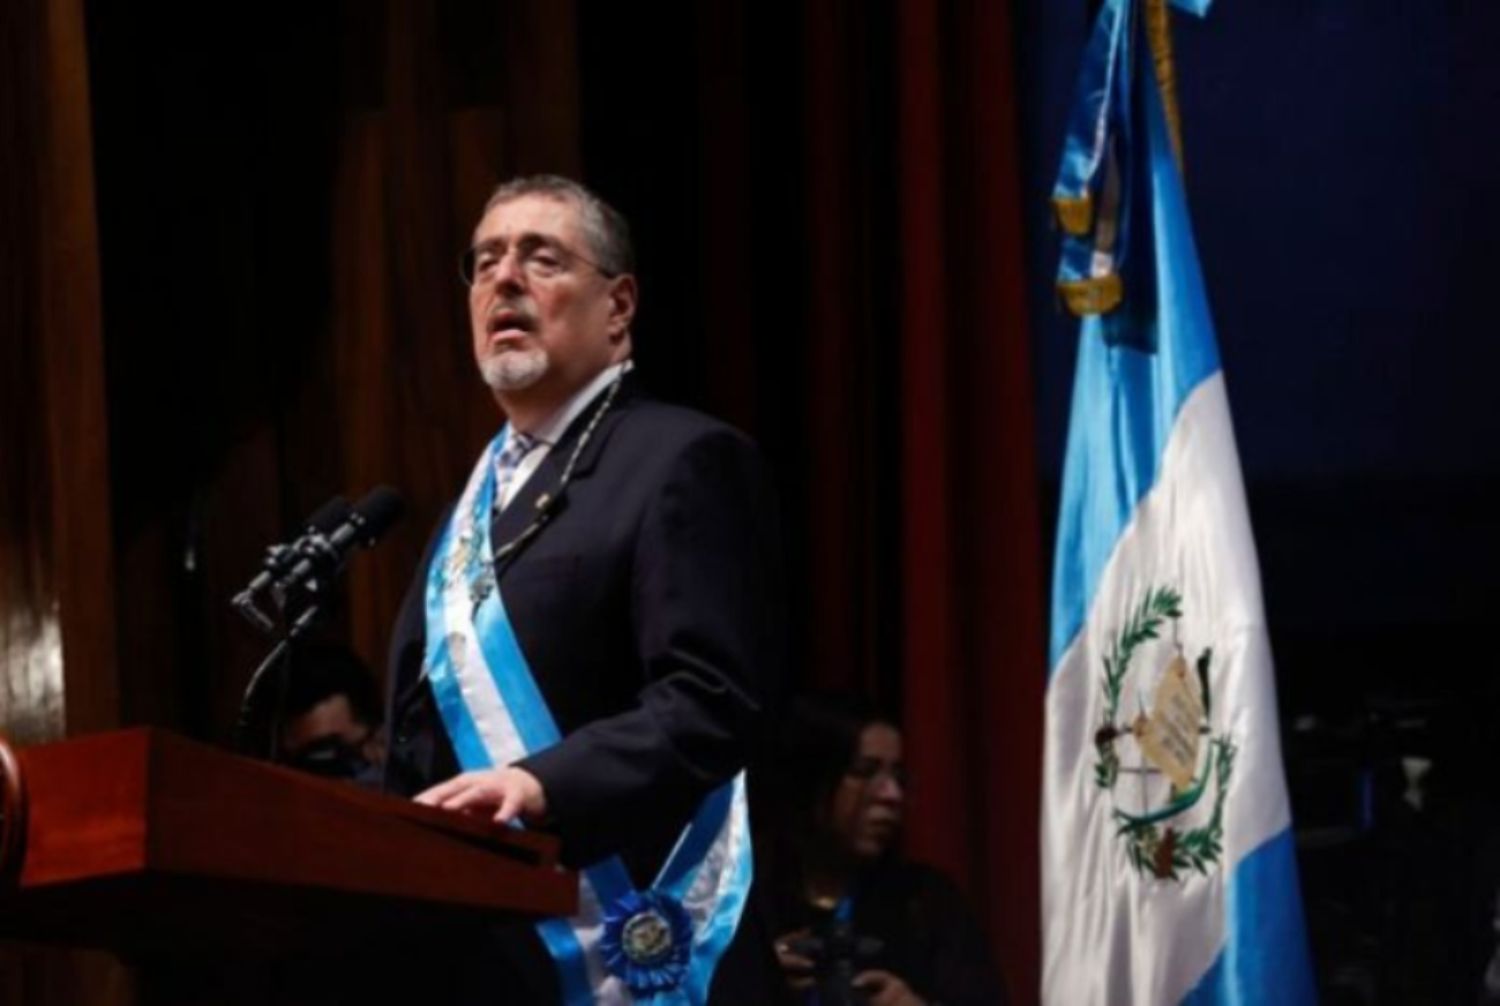 Bernardo Arévalo toma posesión como presidente de Guatemala